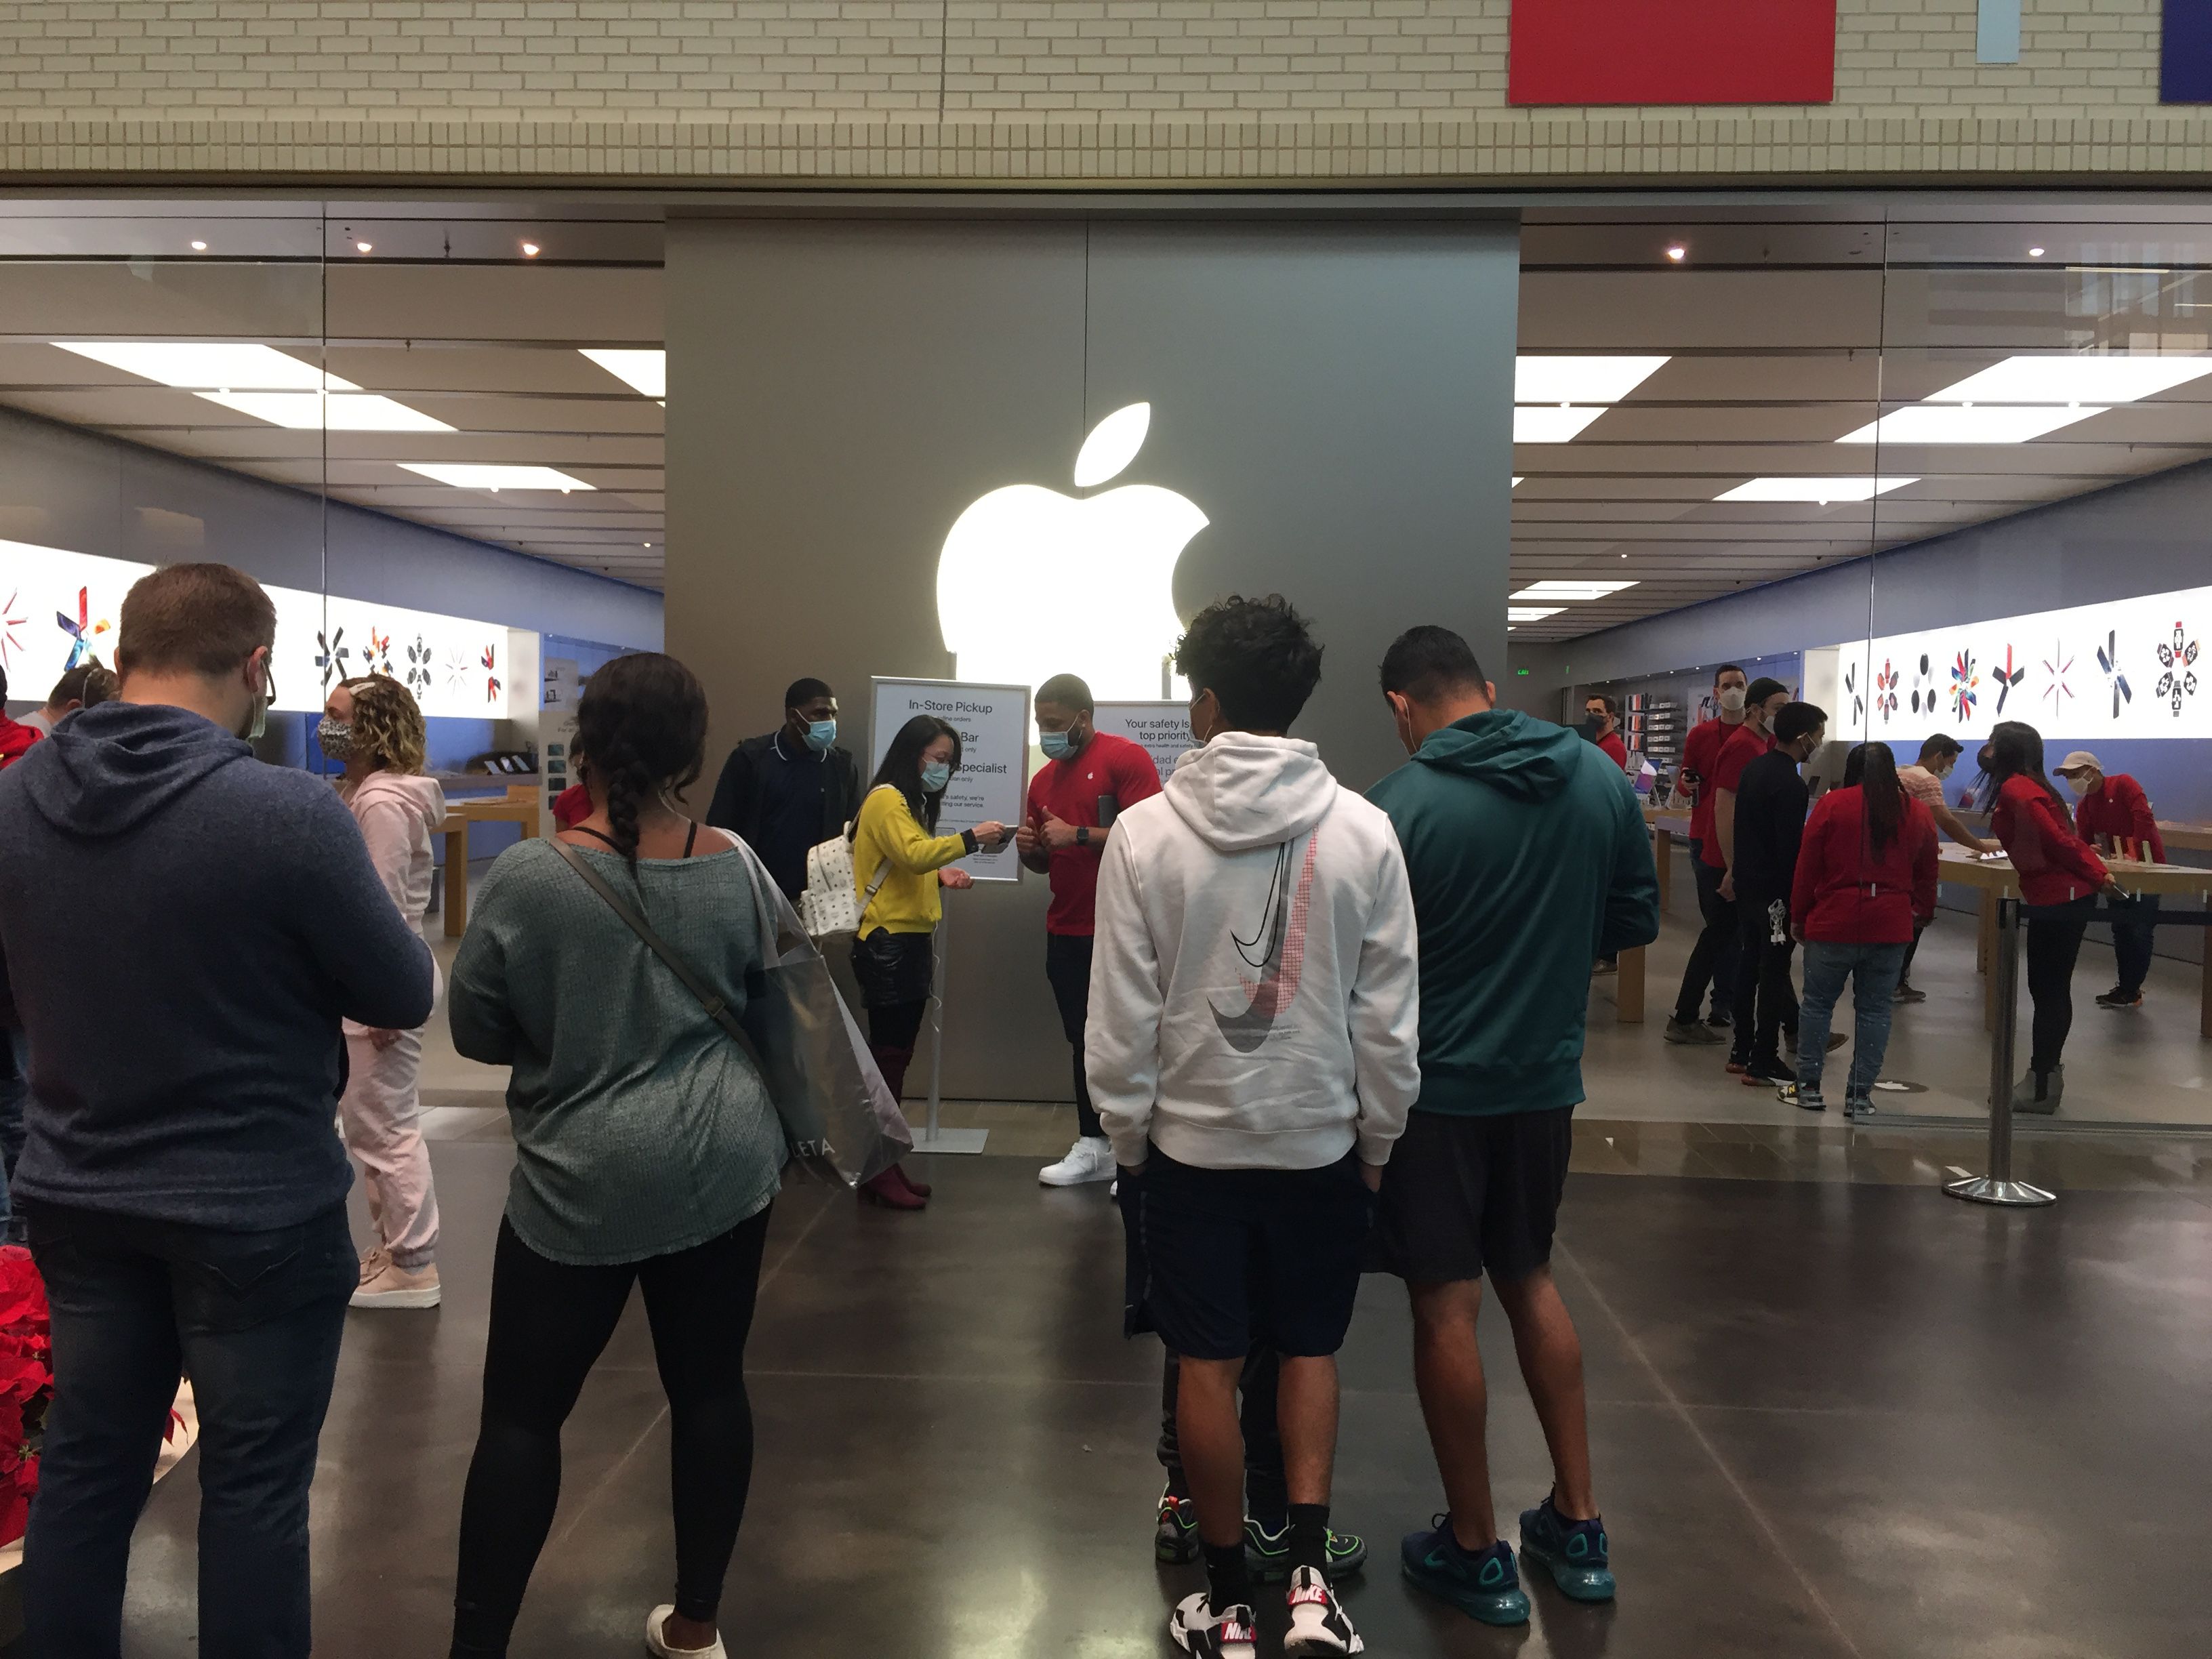 Houston Galleria - Apple Store - Apple